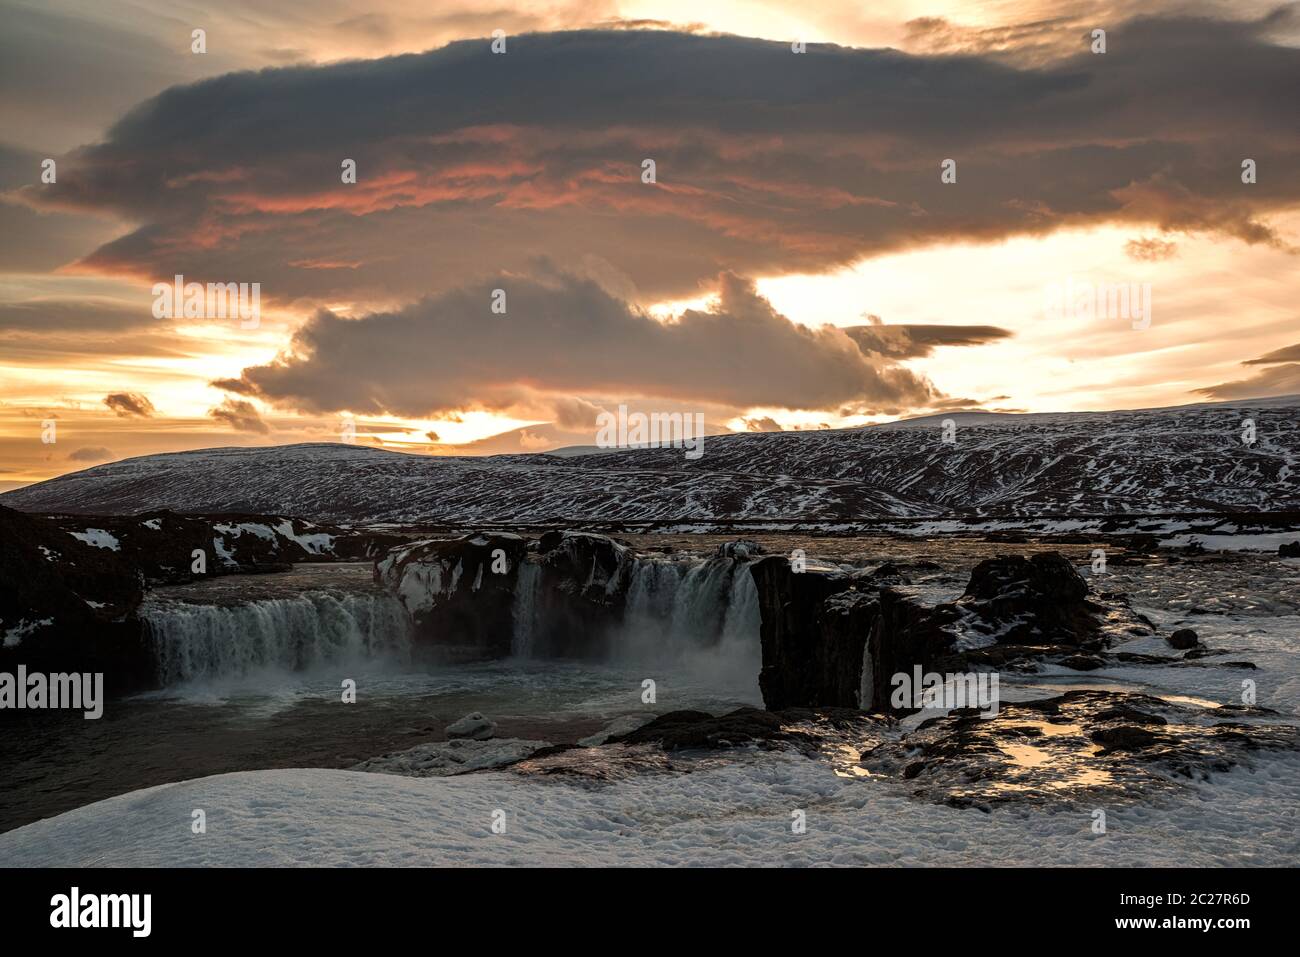 Godafoss waterfall at sunset, Iceland Stock Photo